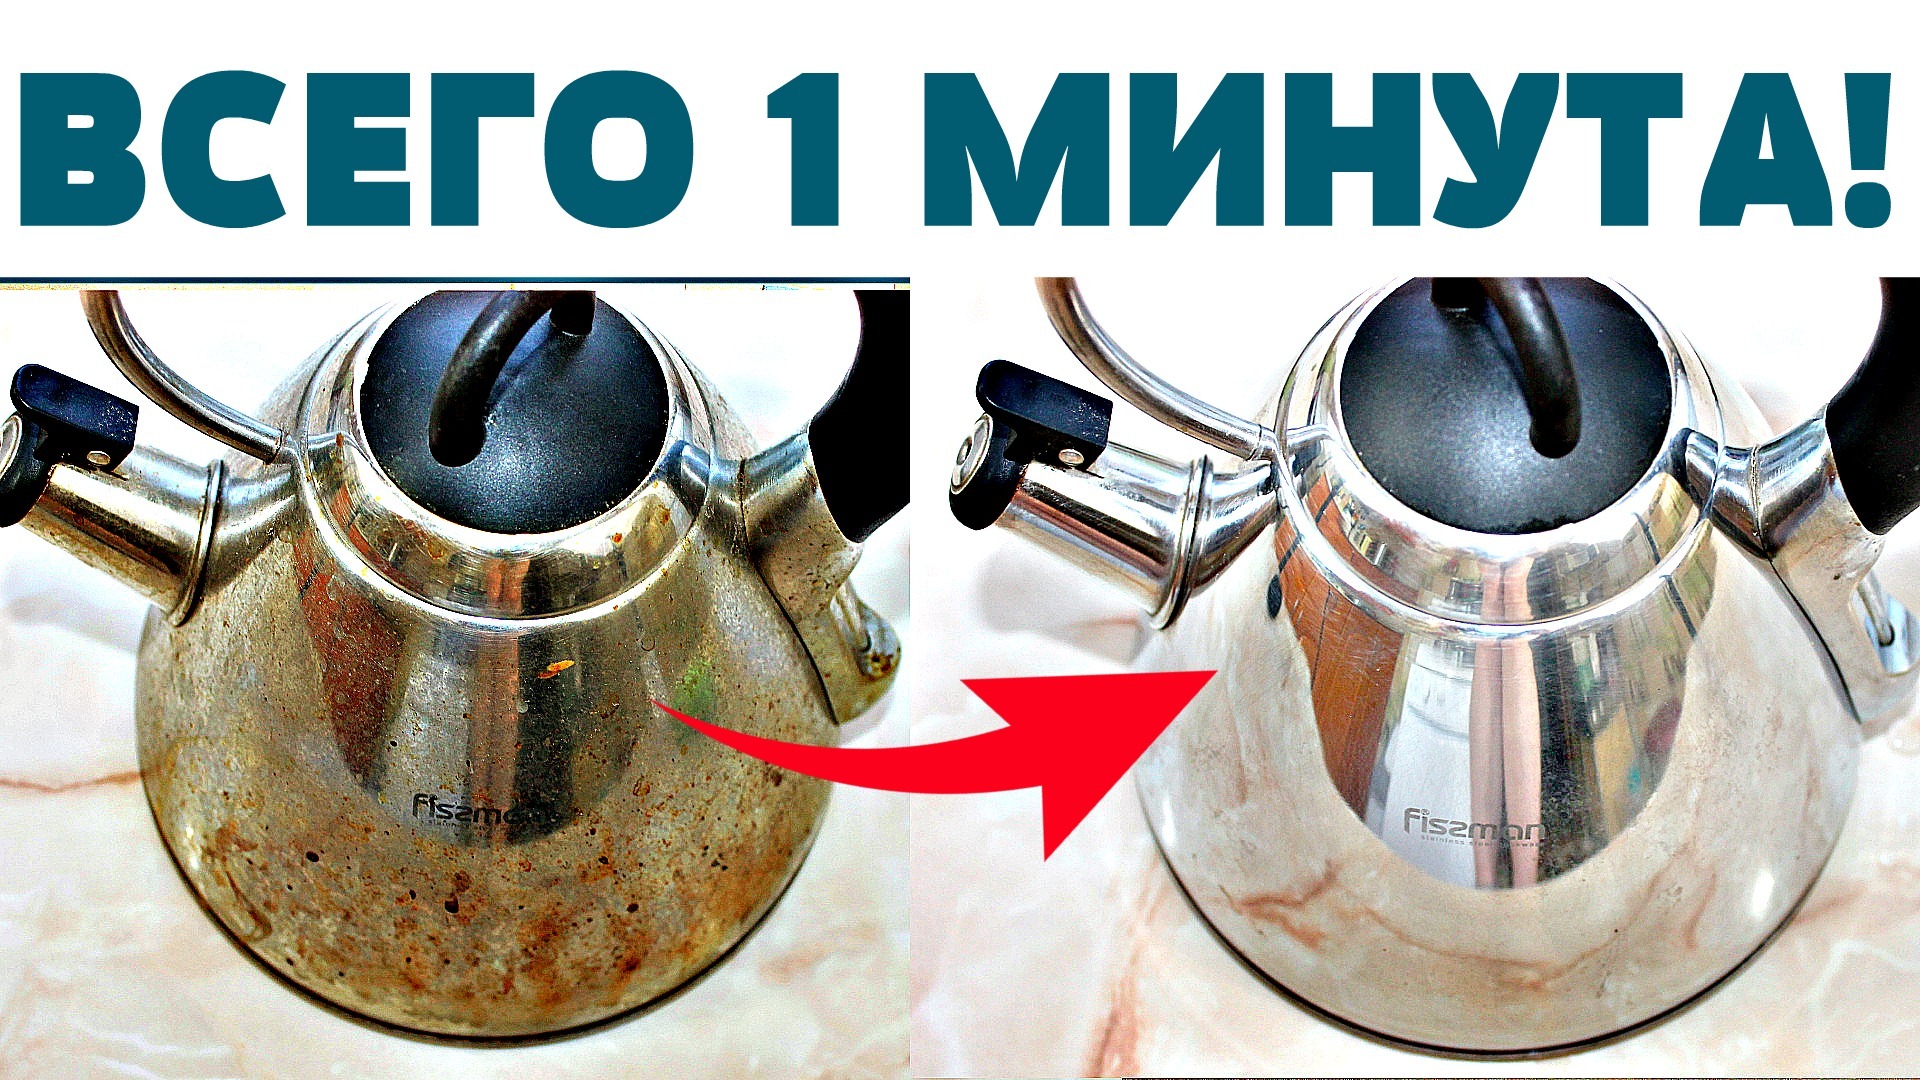 Как очистить электрический чайник от накипи снаружи?